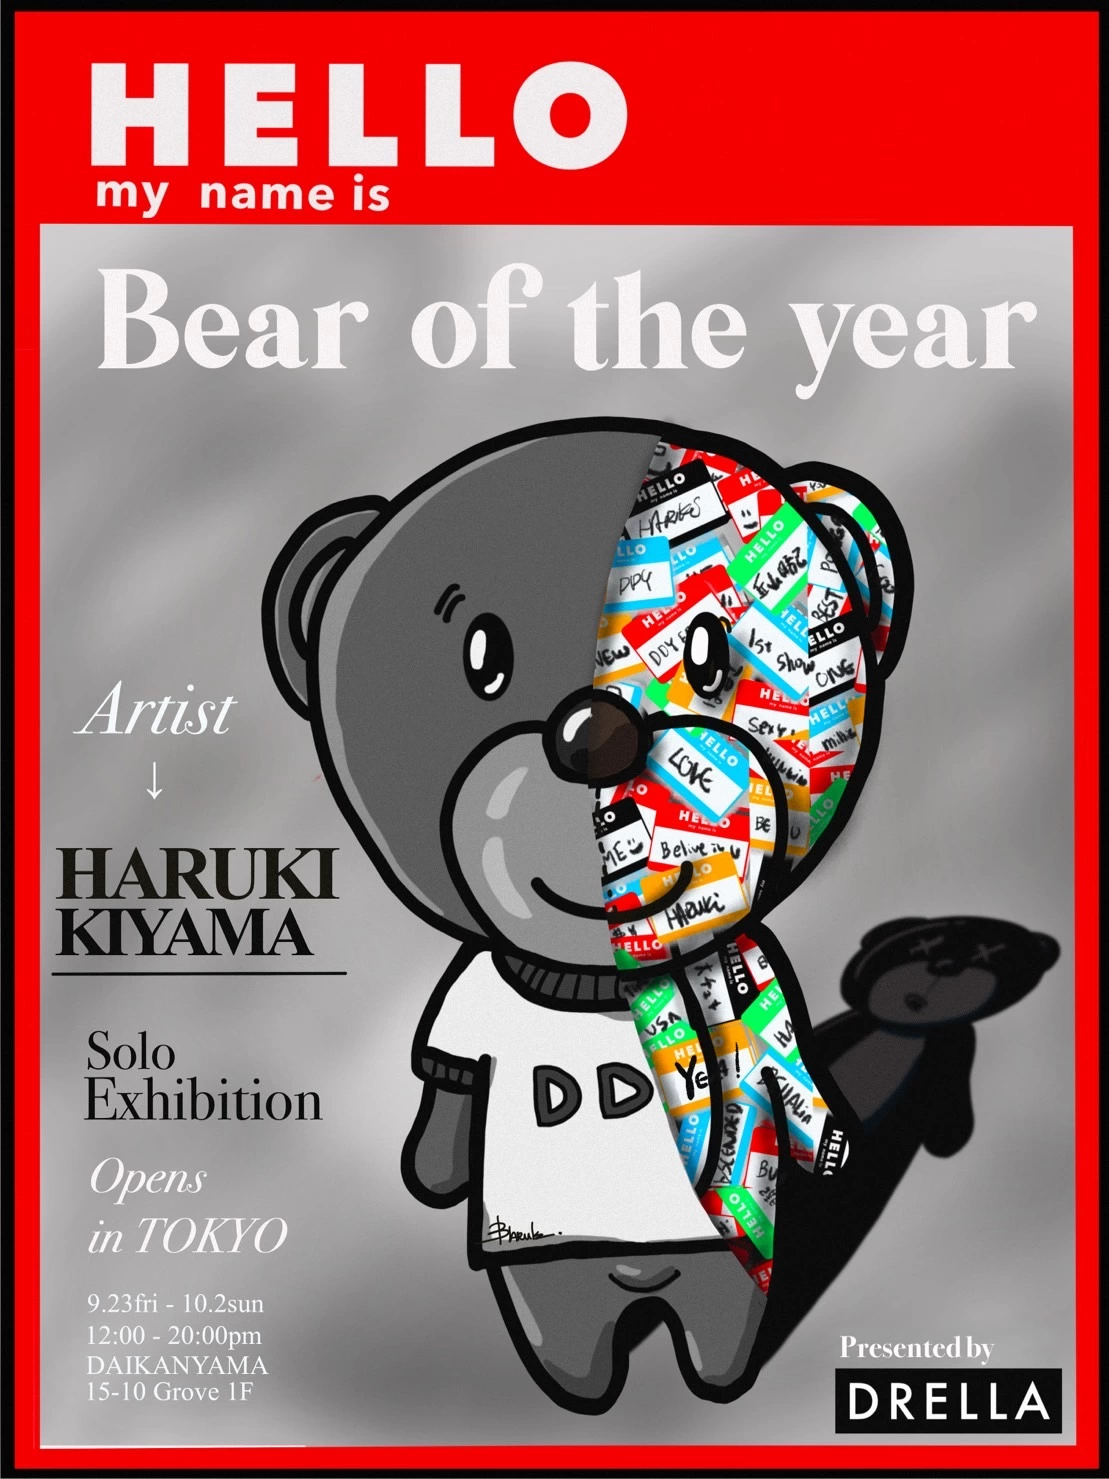 丘山晴己 Solo Exhibition「HELLO My Name Is」in Tokyo presented by DRELLA